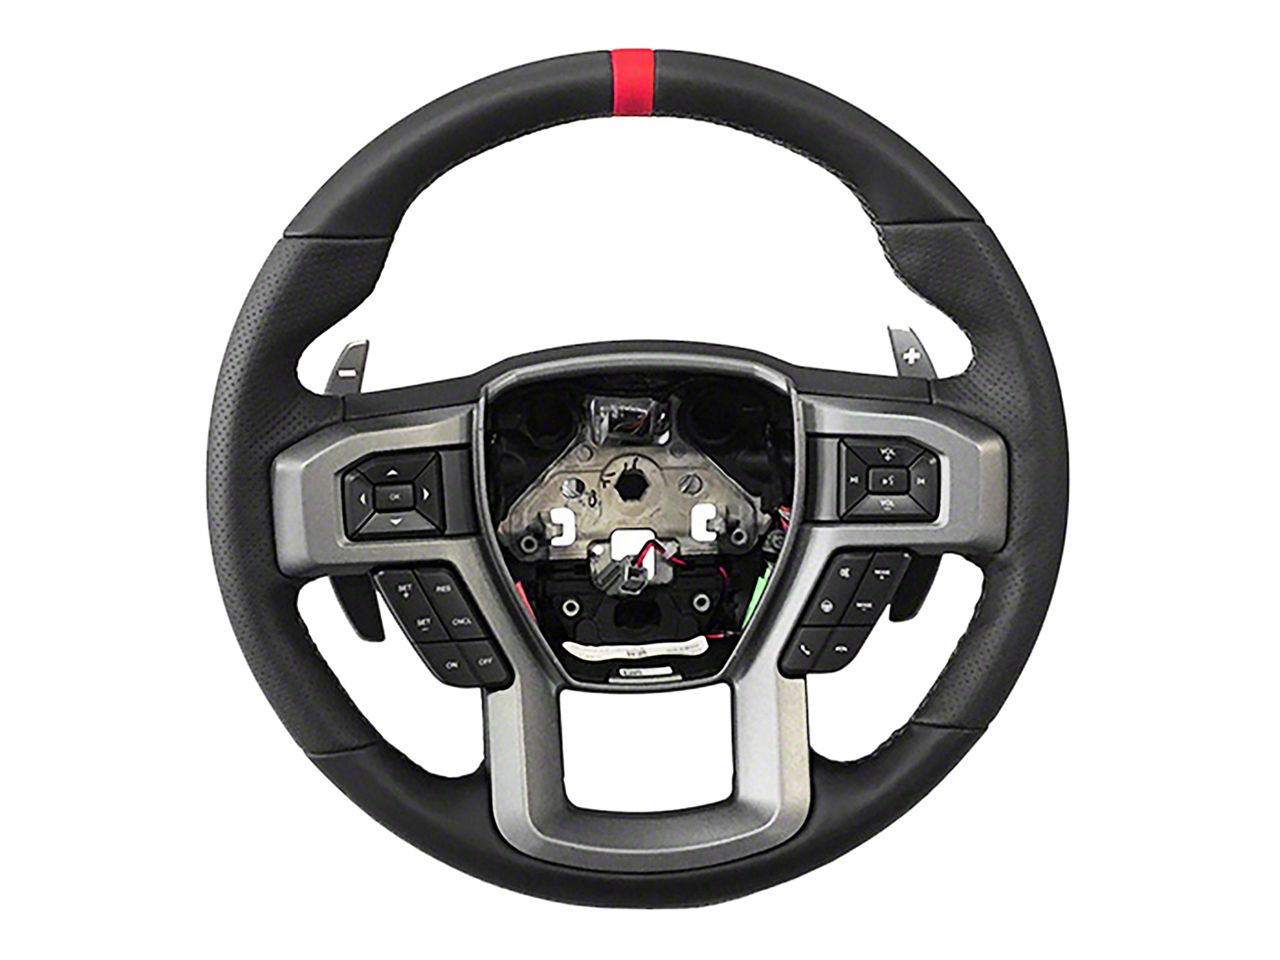 Sierra3500 Steering Wheels & Accessories 2007-2014